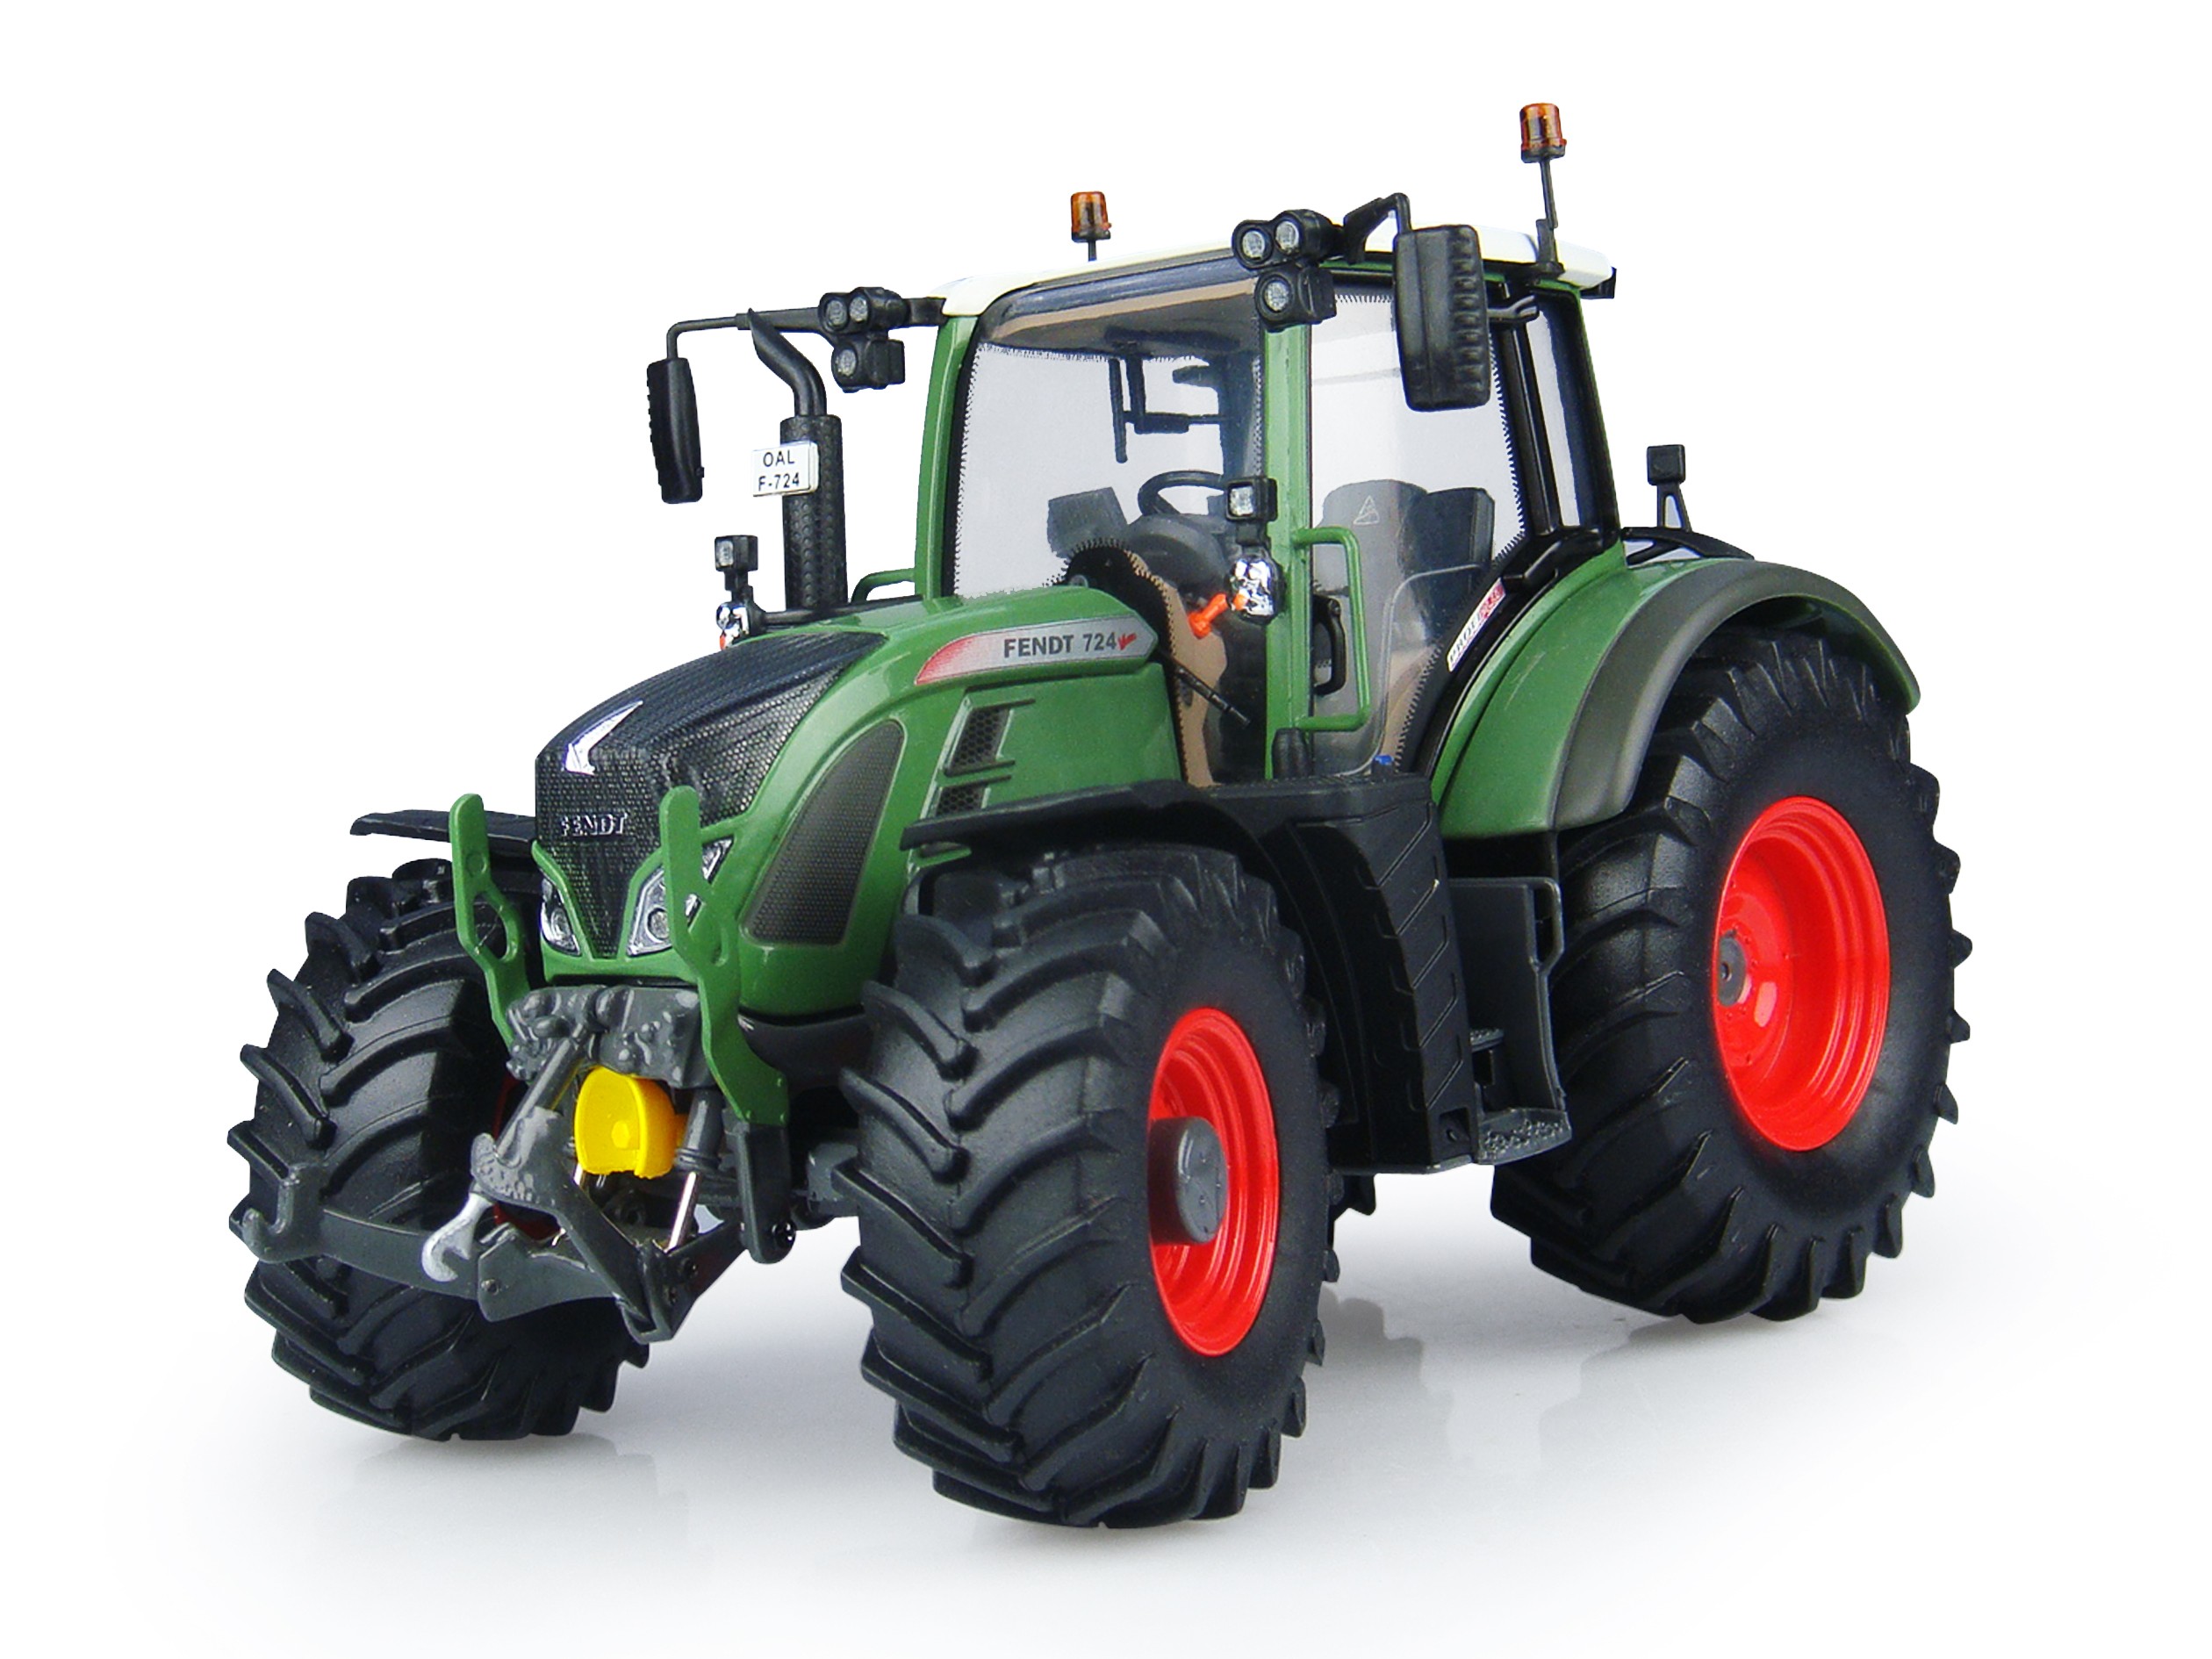 Filing tuning di alta qualità Fendt Tractor 700 series 724 6.1 220hp